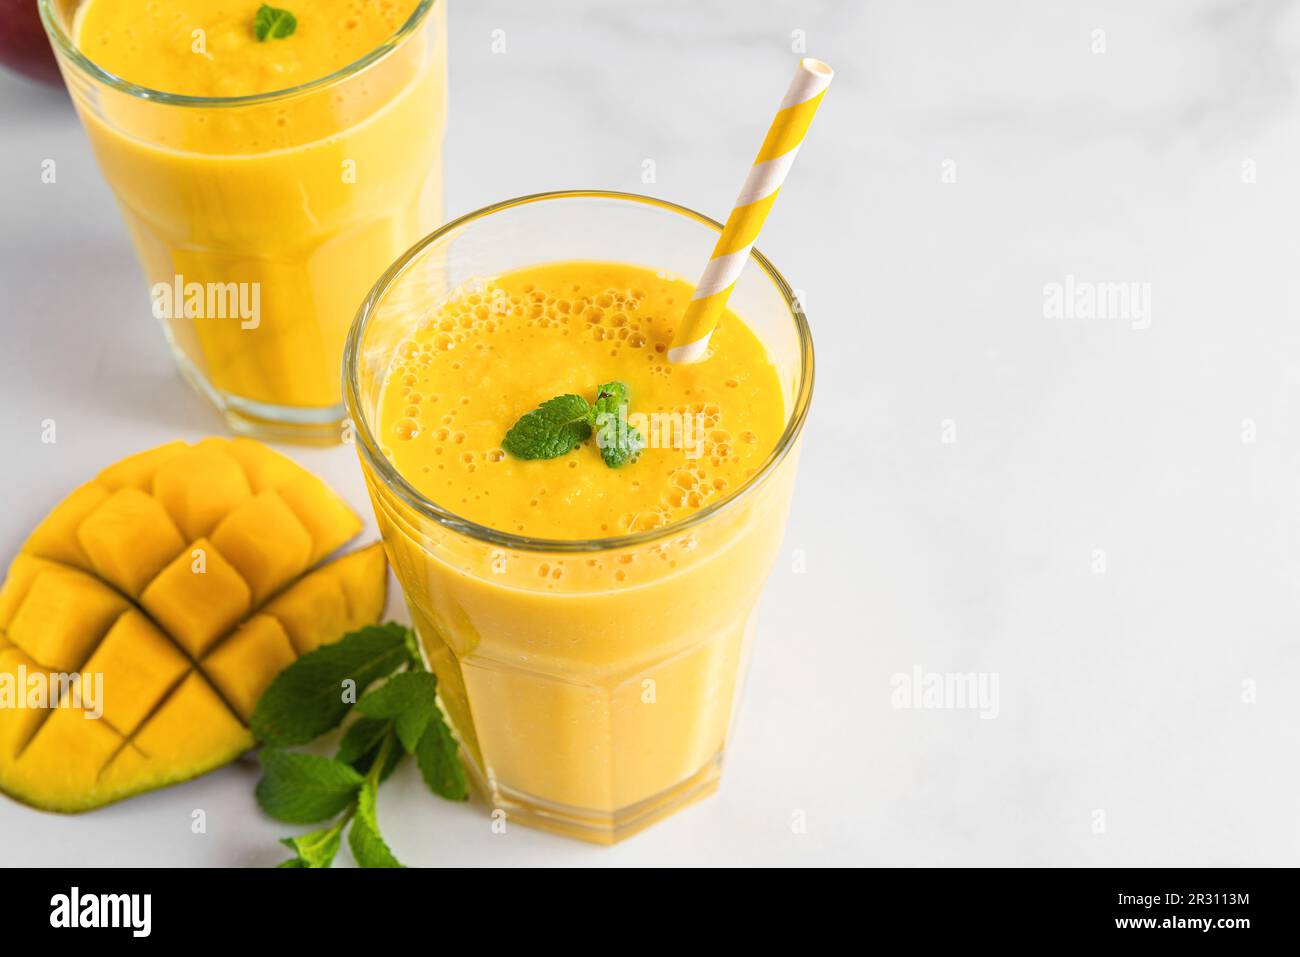 Smoothie à la mangue jaune frais dans des verres avec paille, fruits frais et menthe. Boisson tropicale d'été Banque D'Images